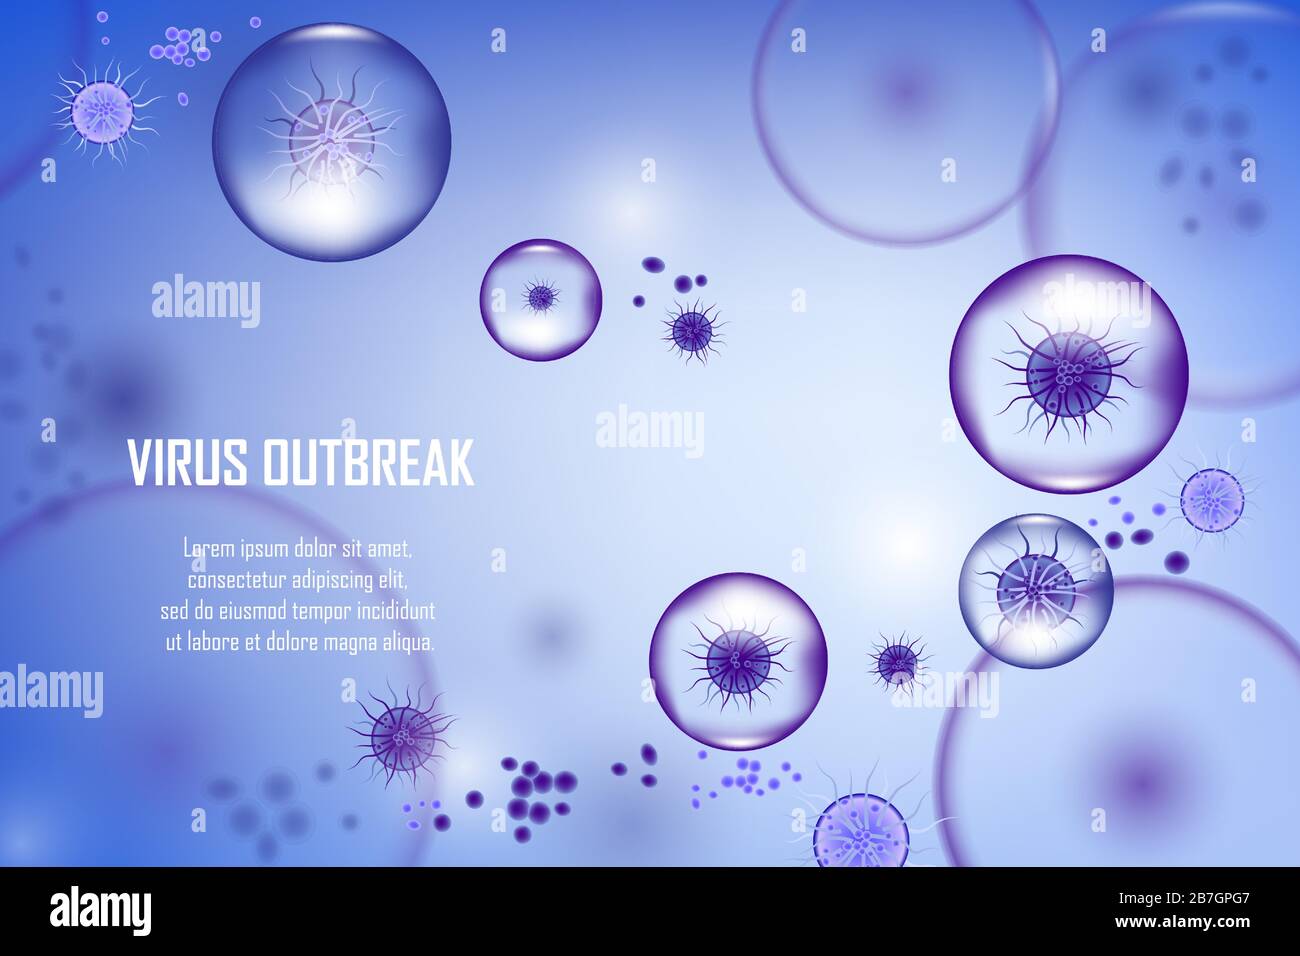 Abstrakter Vektorhintergrund mit Bakterien- und Viruszellen. Biology Medical Science Ad Concept Banner-Design. Abbildung medizinischer Molekülienseküle der Viruszelle Stock Vektor